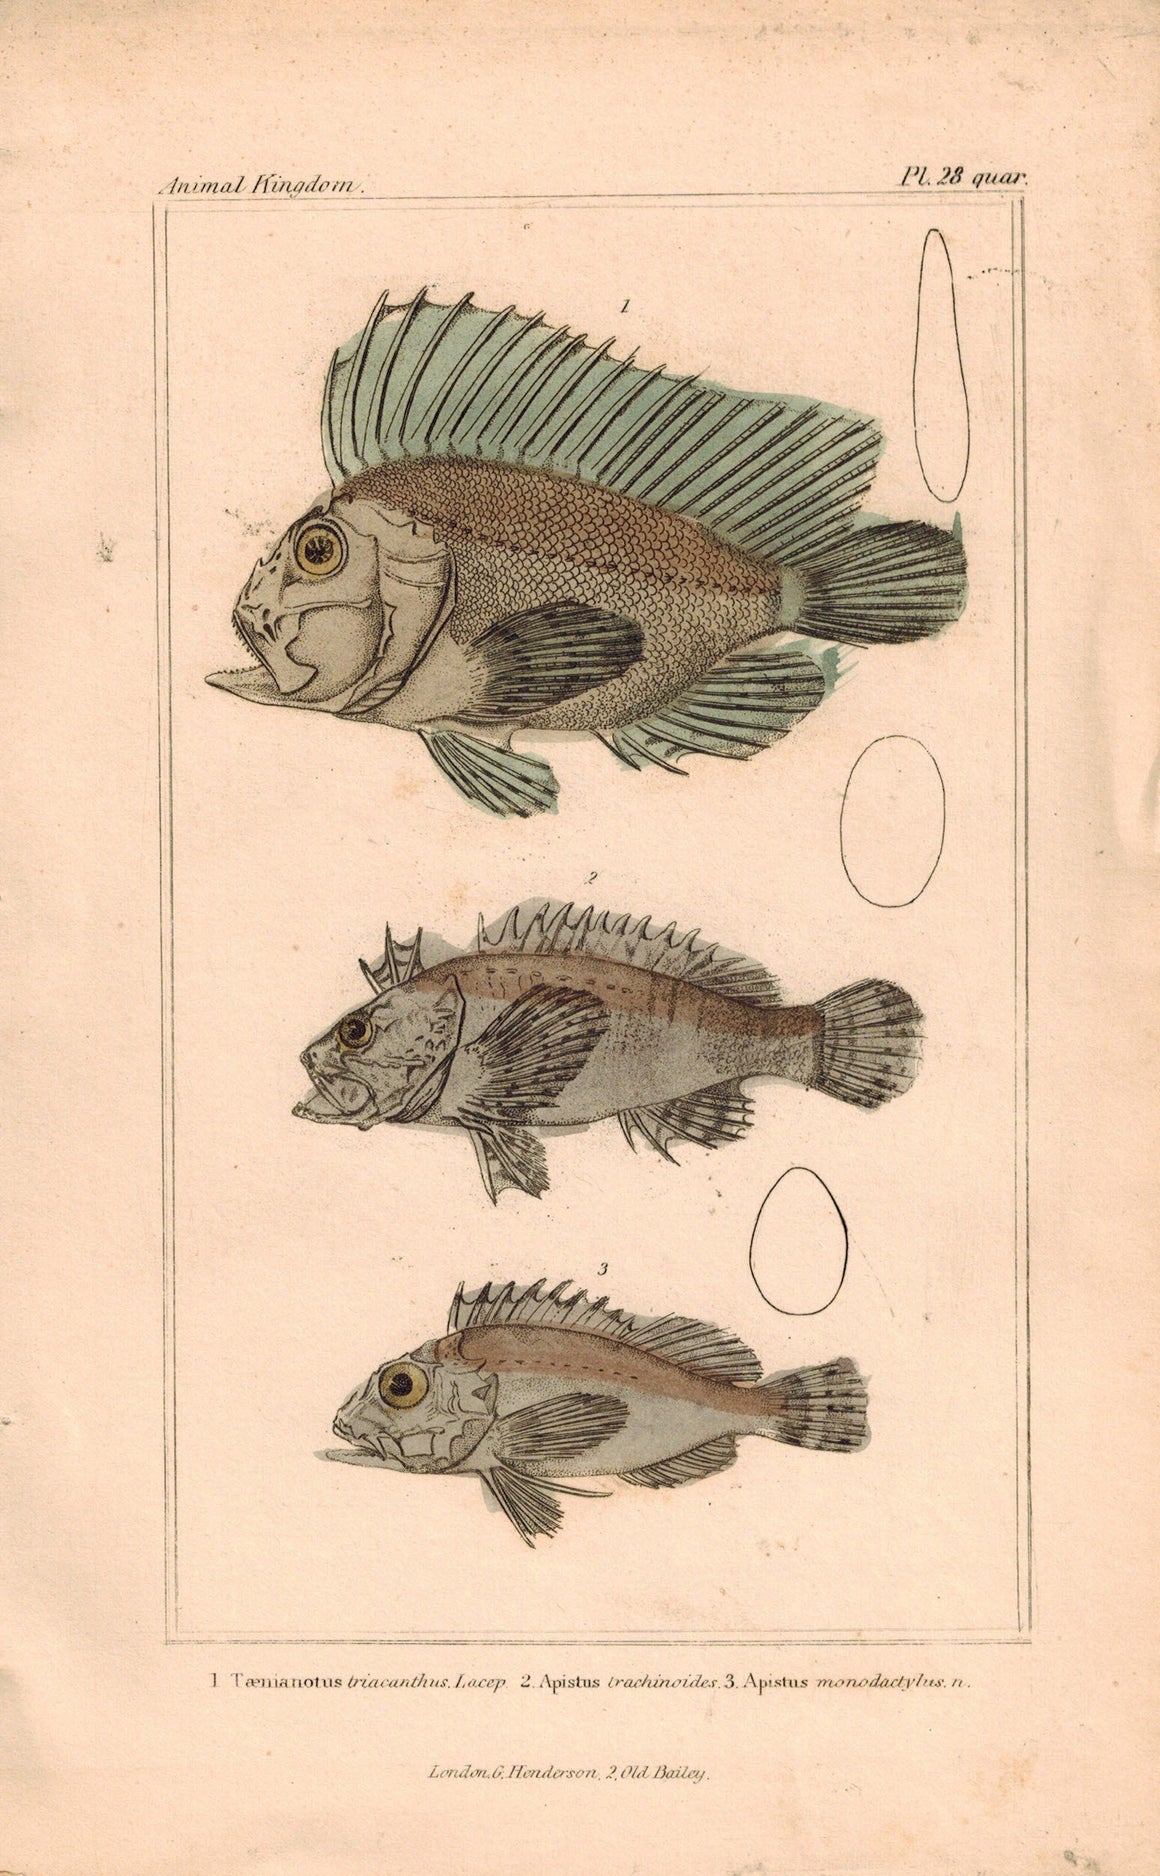 Teanianotus, Apistus Fish 1834 Engraved Cuvier Antique Print Plate 28 quar